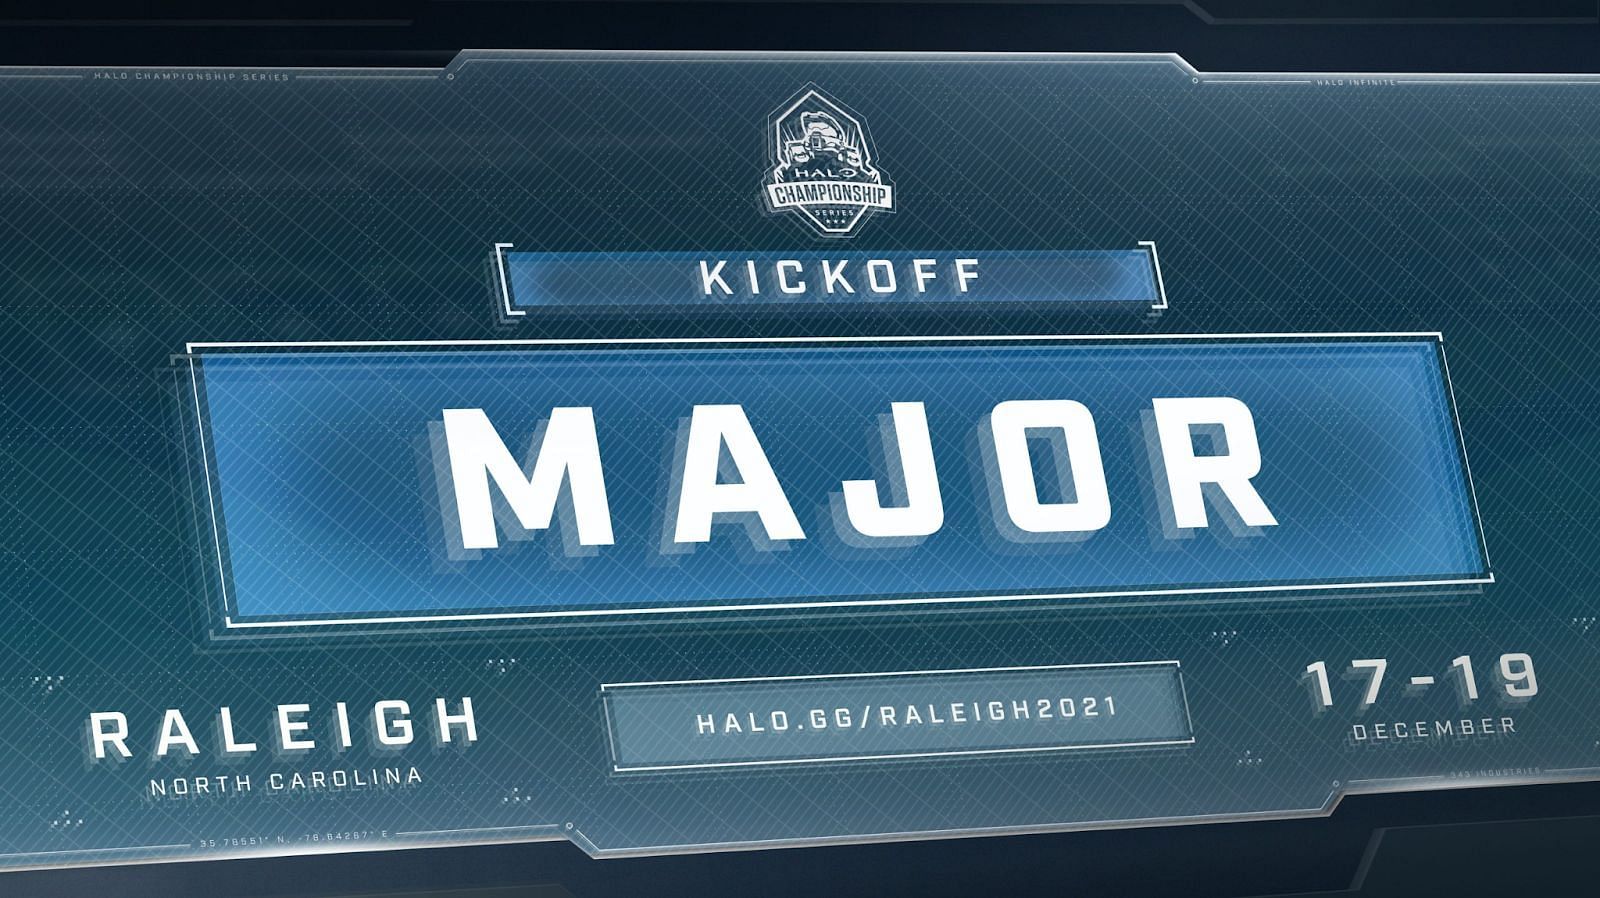 Halo Championship Series 2021: Kickoff Major (Image by Halo Championship Series)